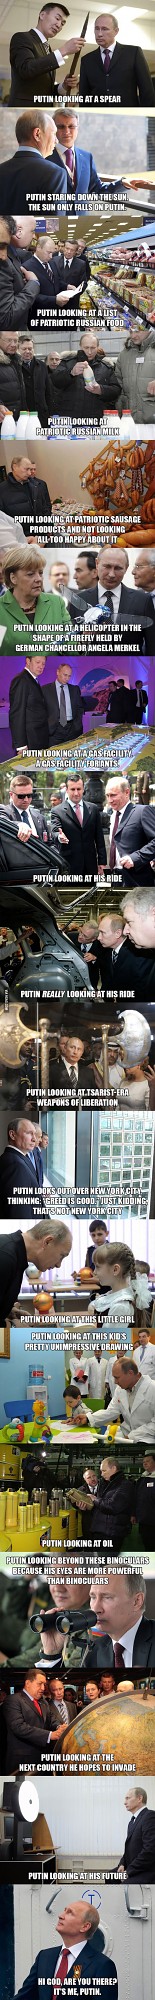 Putin Looking at Things